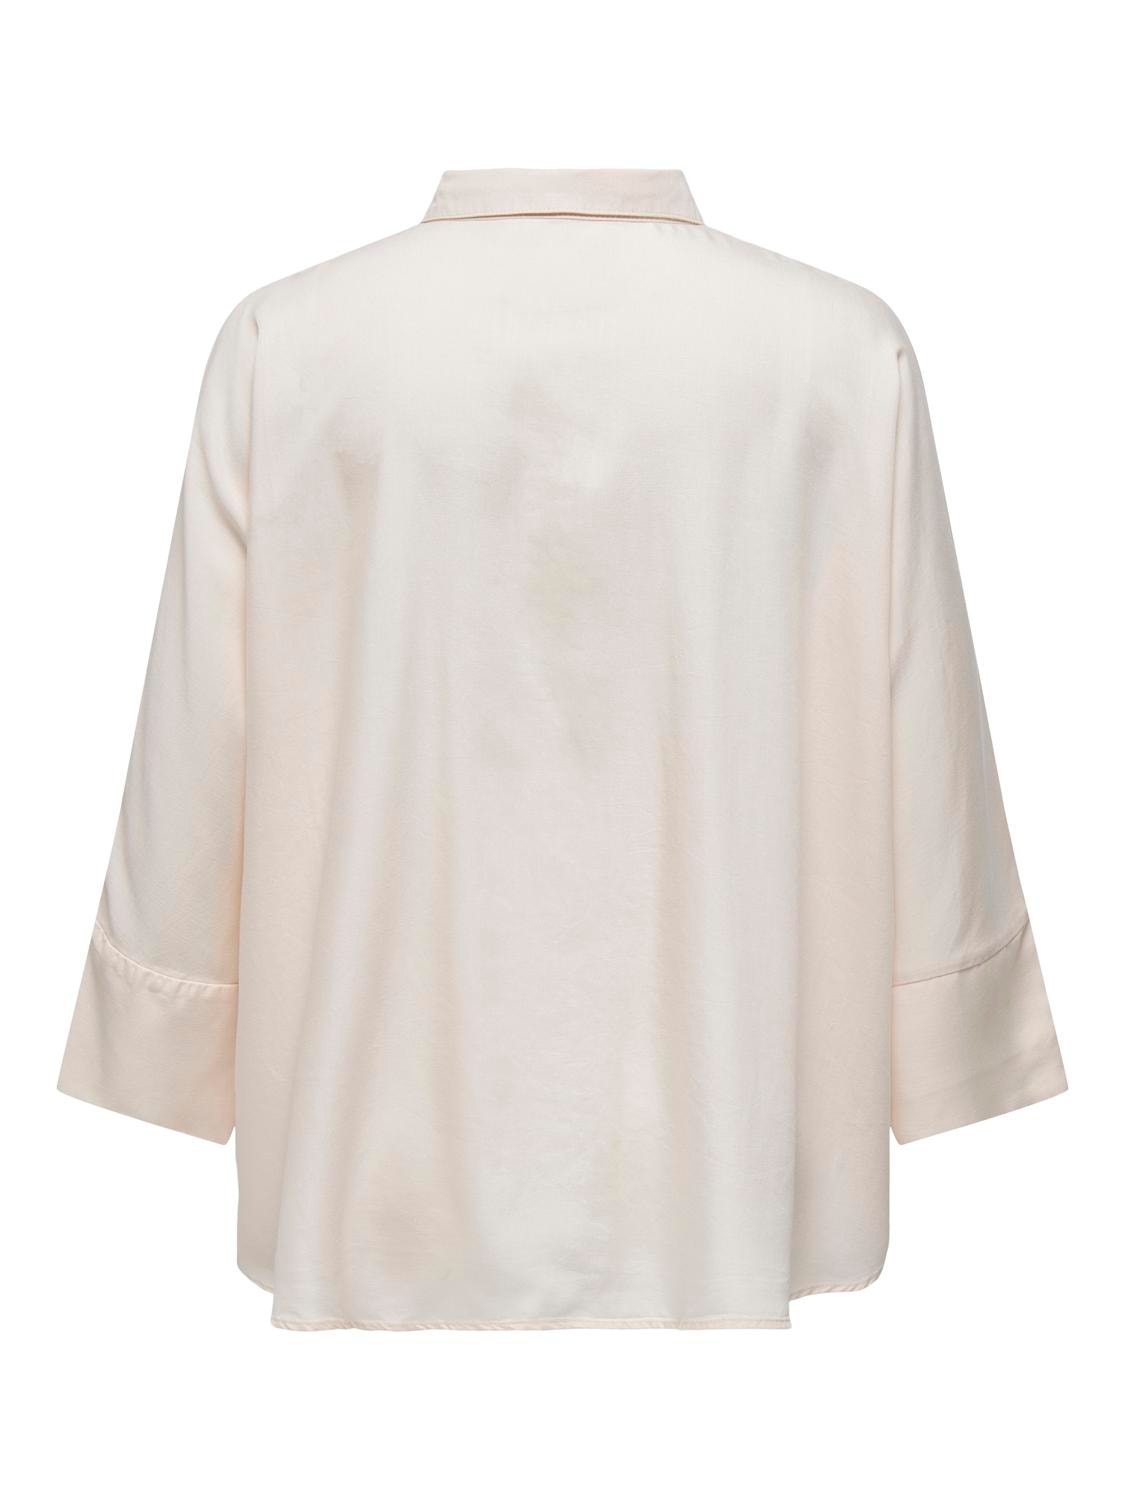 ONLY Camisas Corte comfort Cuello de camisa -Ecru - 15320984